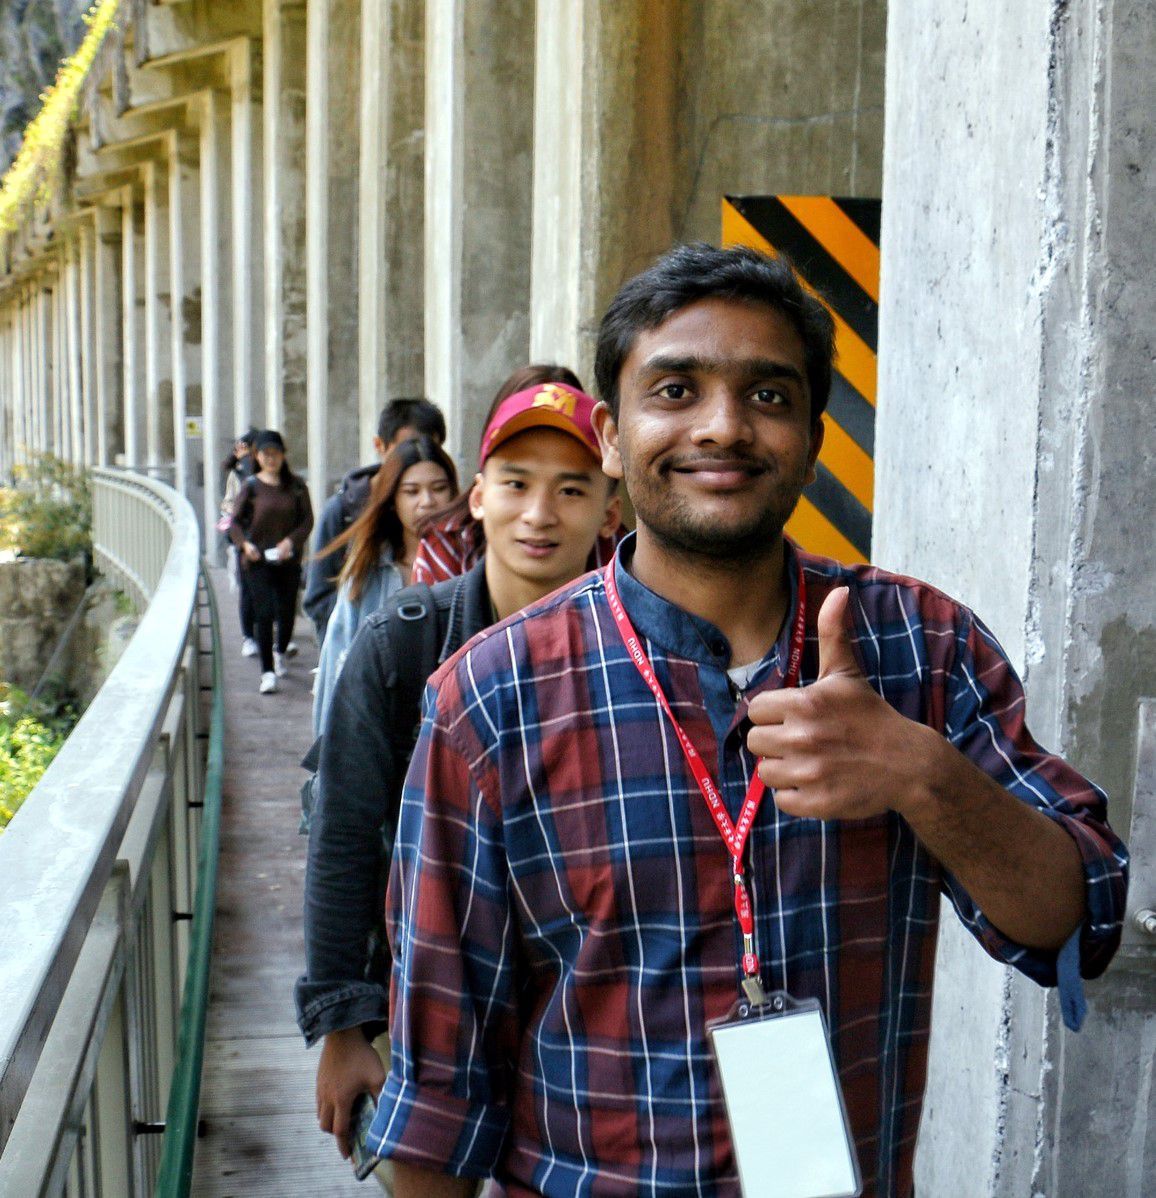 境外學生太魯閣國家公園文化參訪之旅